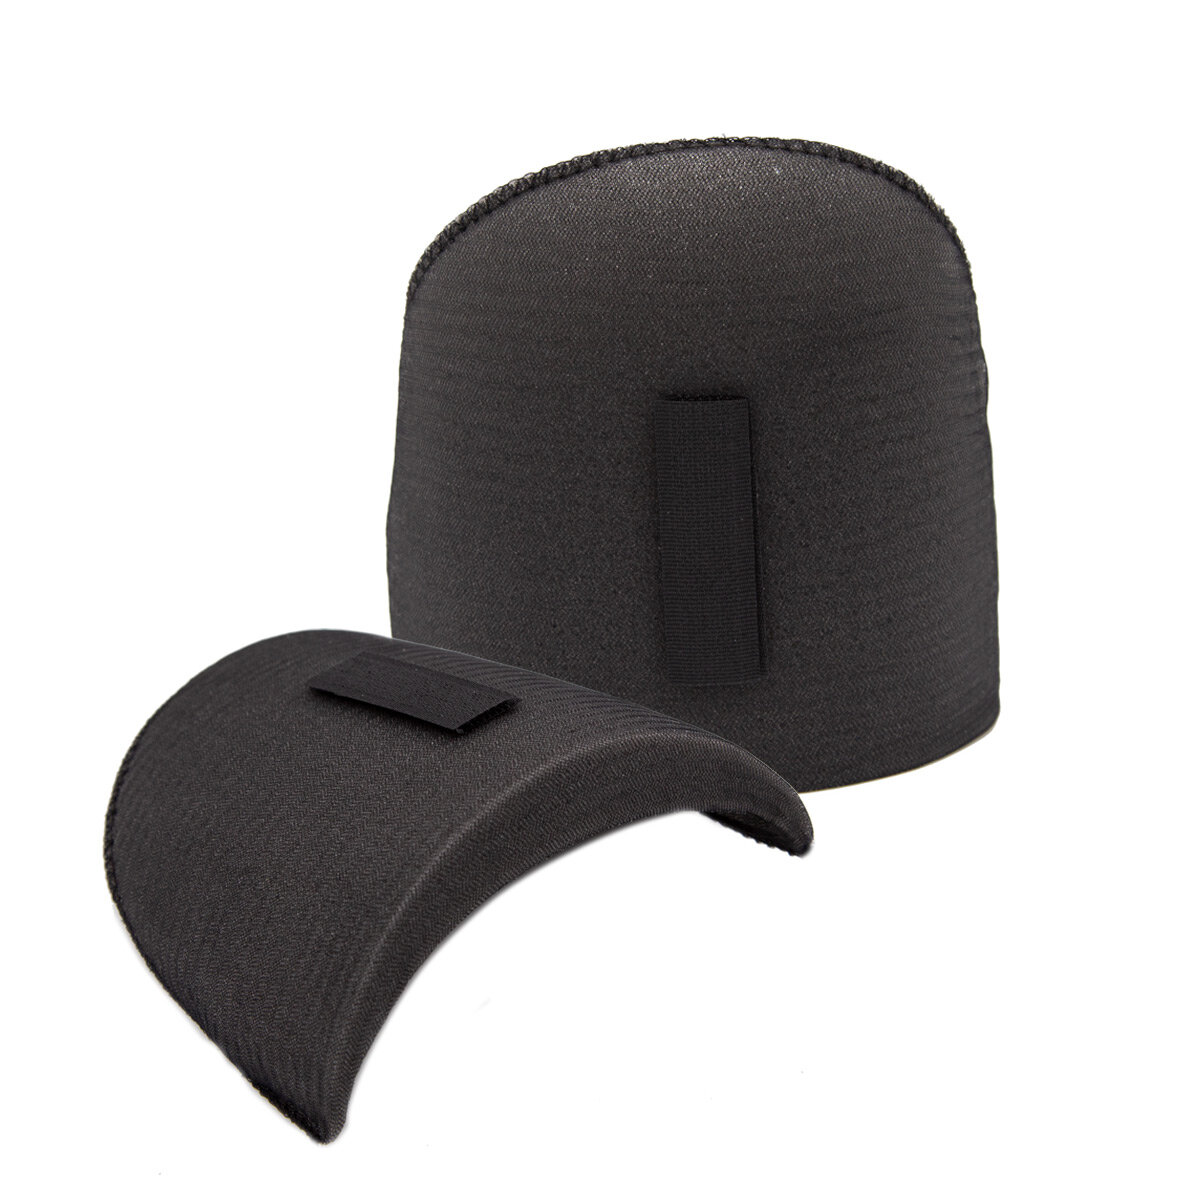 Плечевые накладки обшитые с контактной лентой, втачные, 18*120*170 мм, Hobby&Pro (черный)